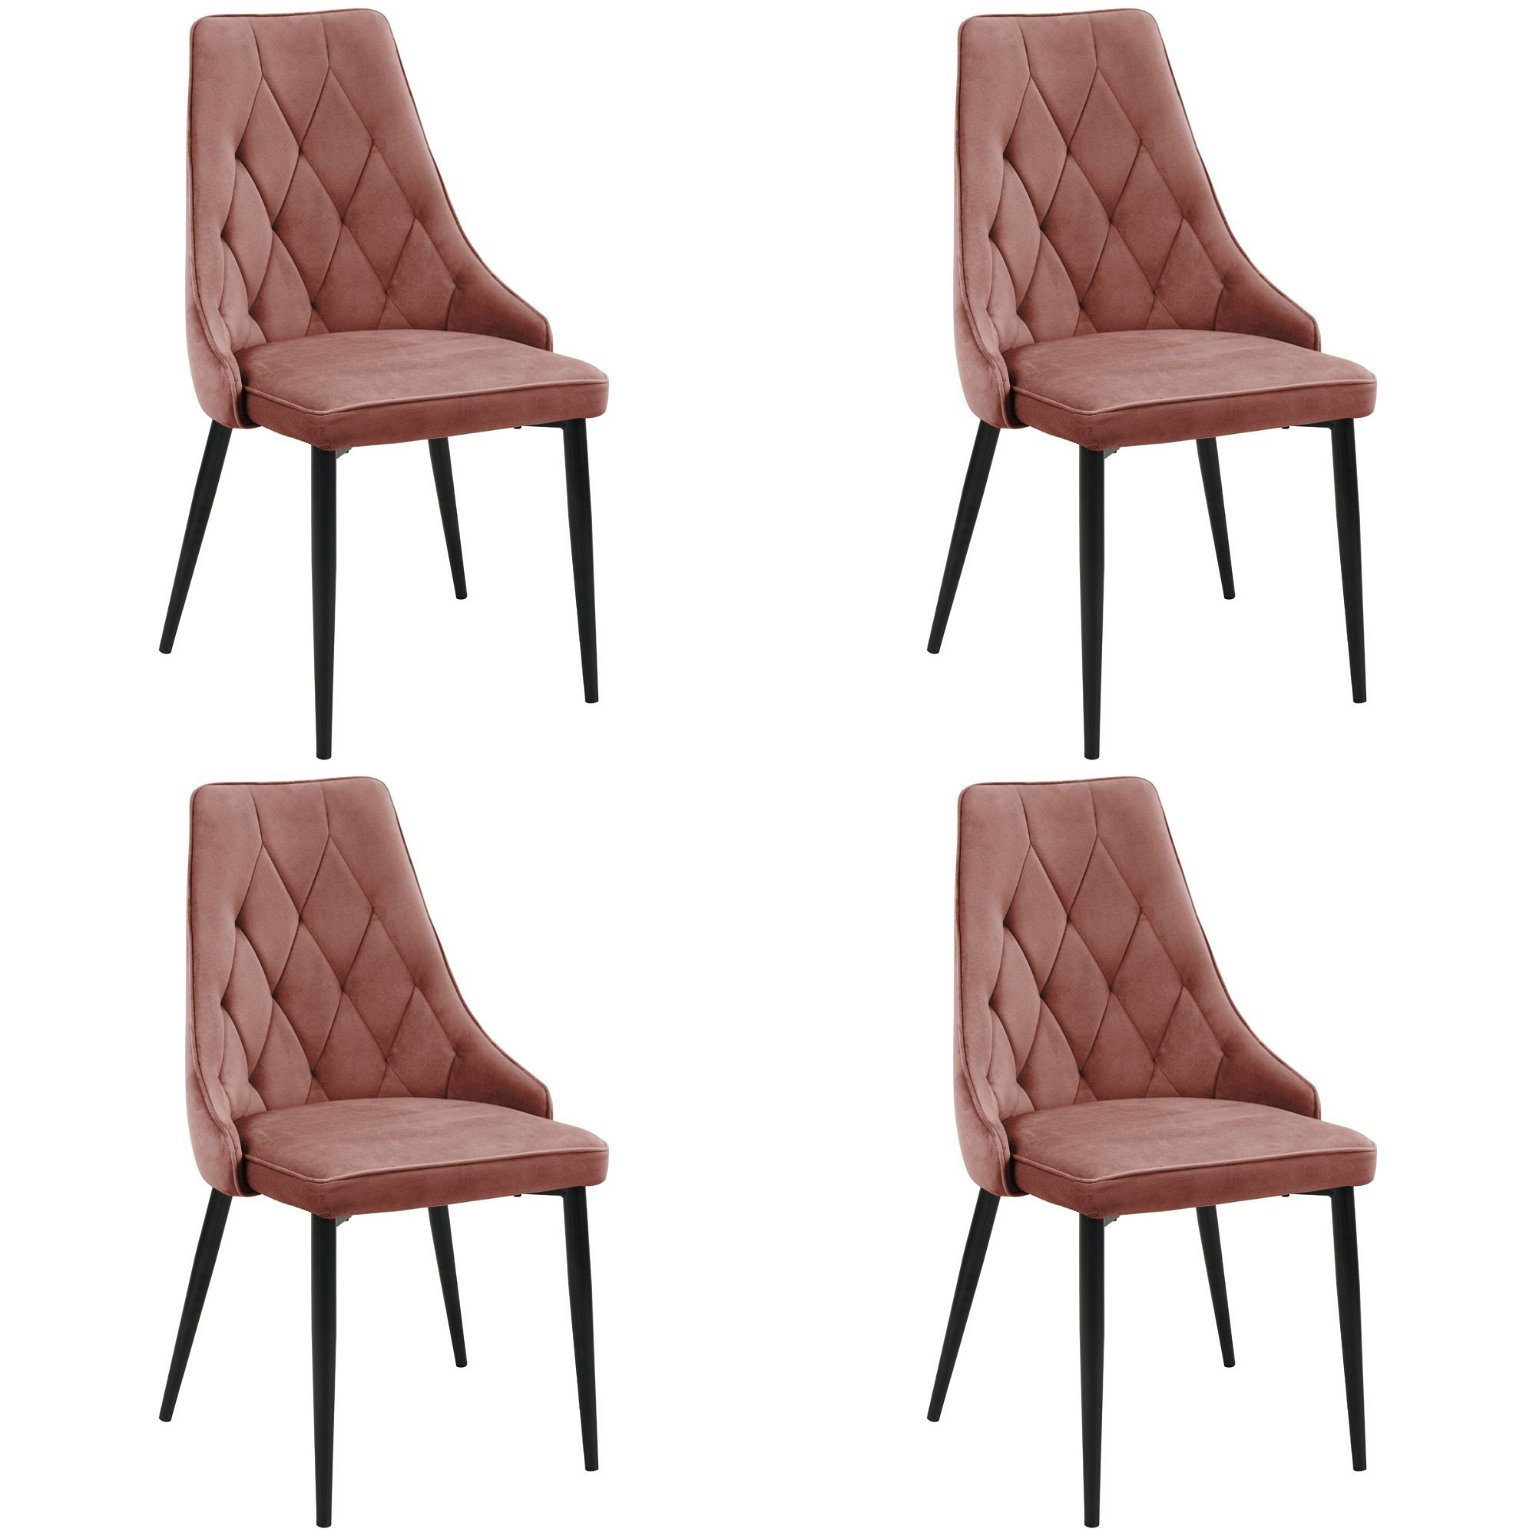 4-ių kėdžių komplektas SJ.054, rožinė